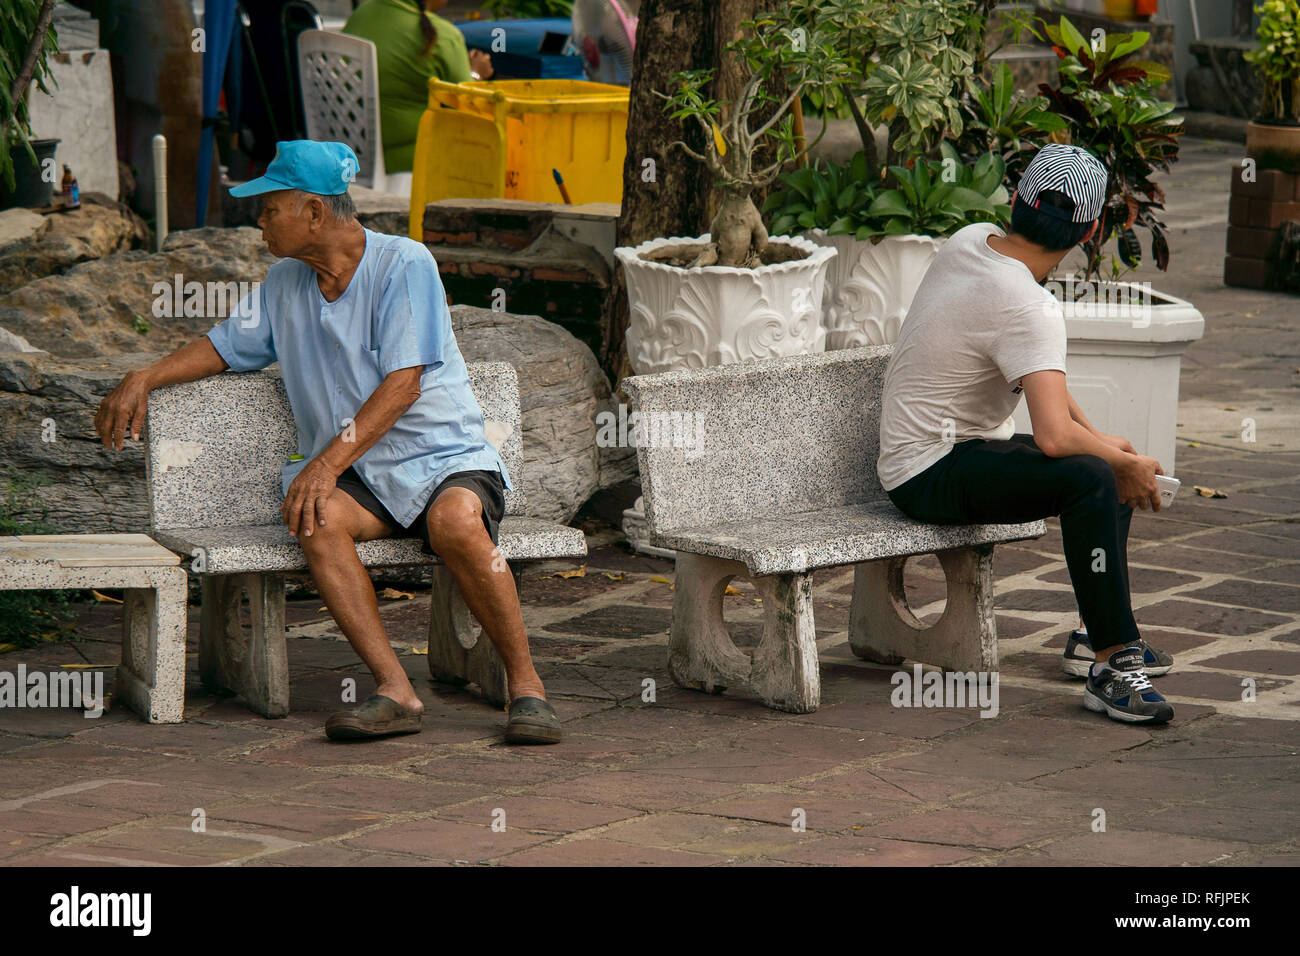 Ein älterer Mann und der junge Mann setzte sich wieder komisch, wieder auf der Suche nach einander in die falsche Richtung. Stockfoto